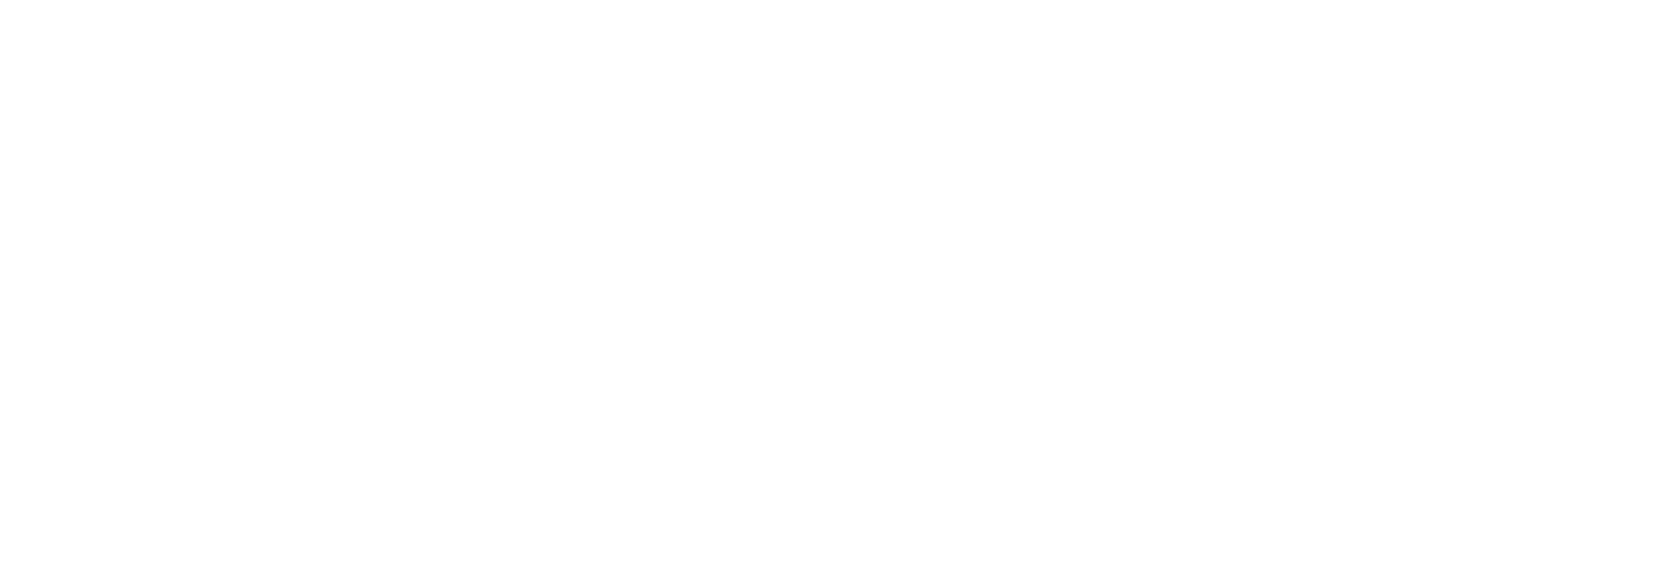 Atlantic Counter Trafficking